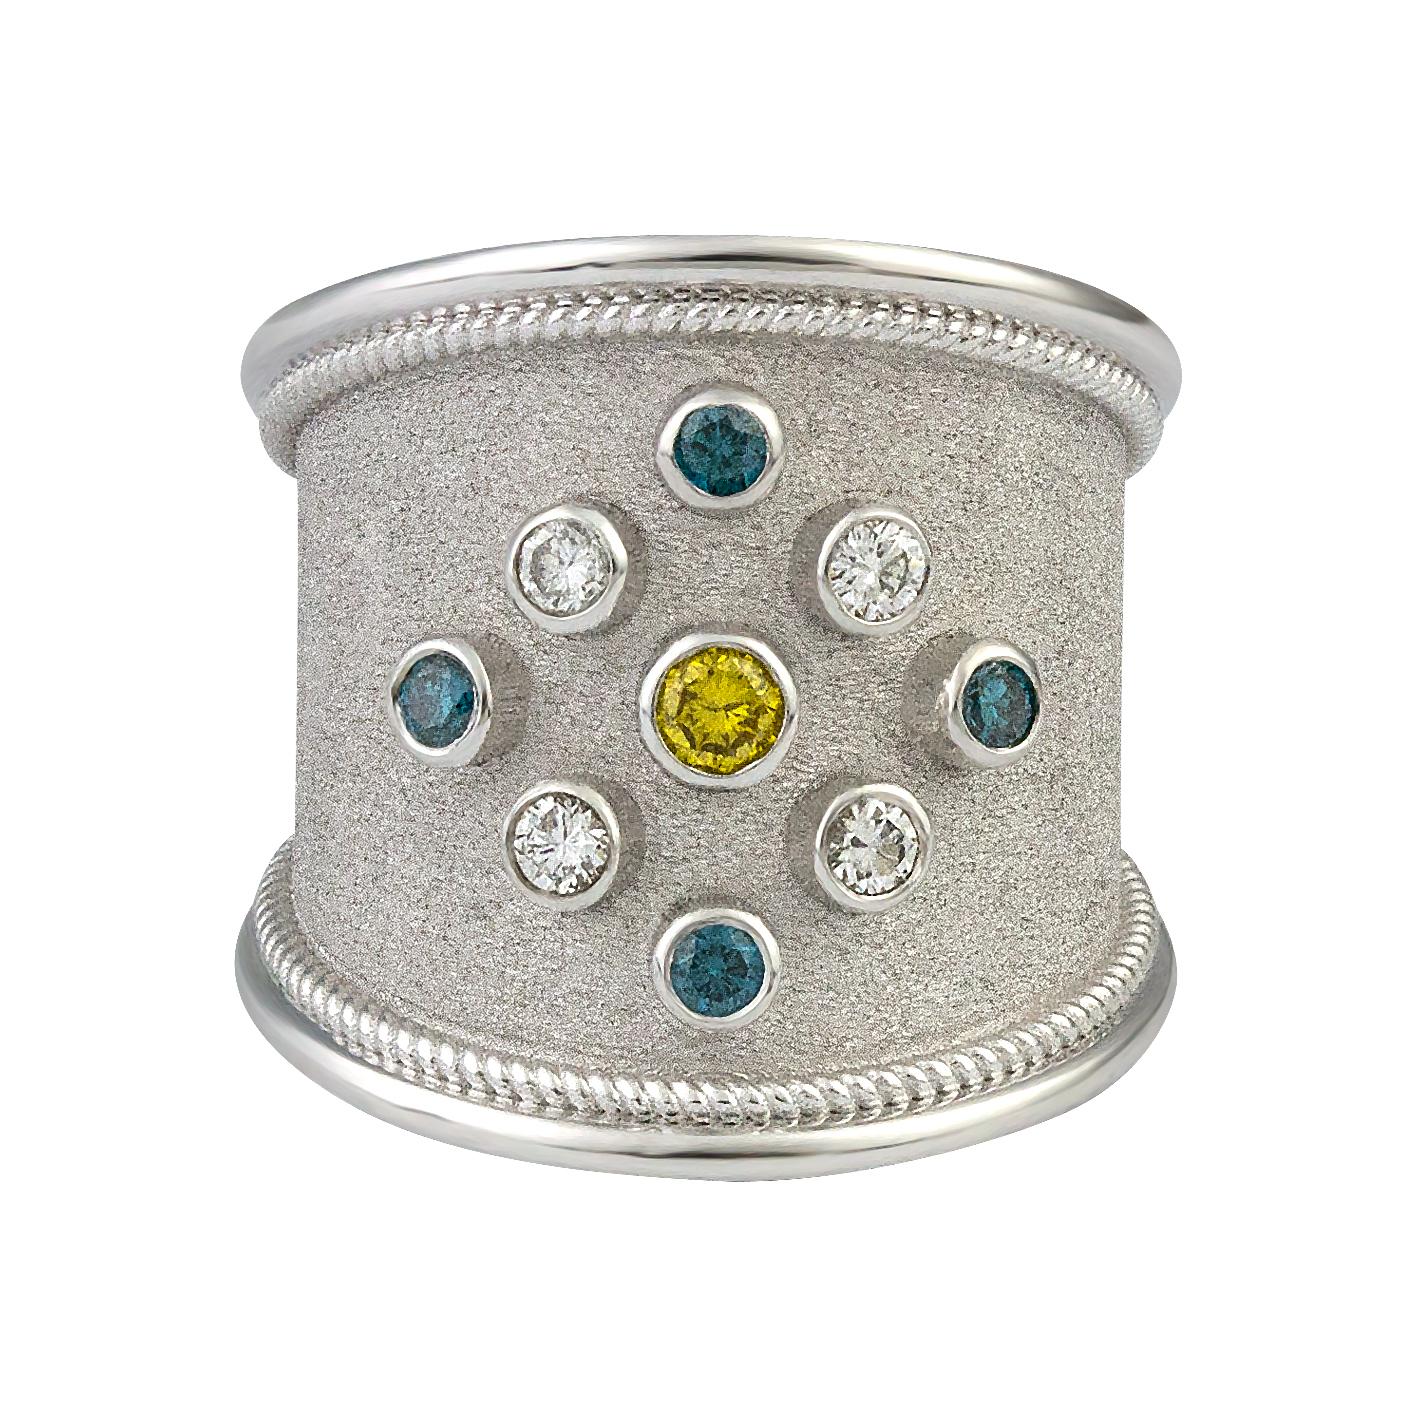 Unique S.Georgios designer 18 Karat Solid White Gold Thick Band Ring tout fait à la main avec un travail byzantin et un fond de velours magnifique fait tout sous un microscope. Cette magnifique bague comporte 4 diamants bleus taillés en brillant